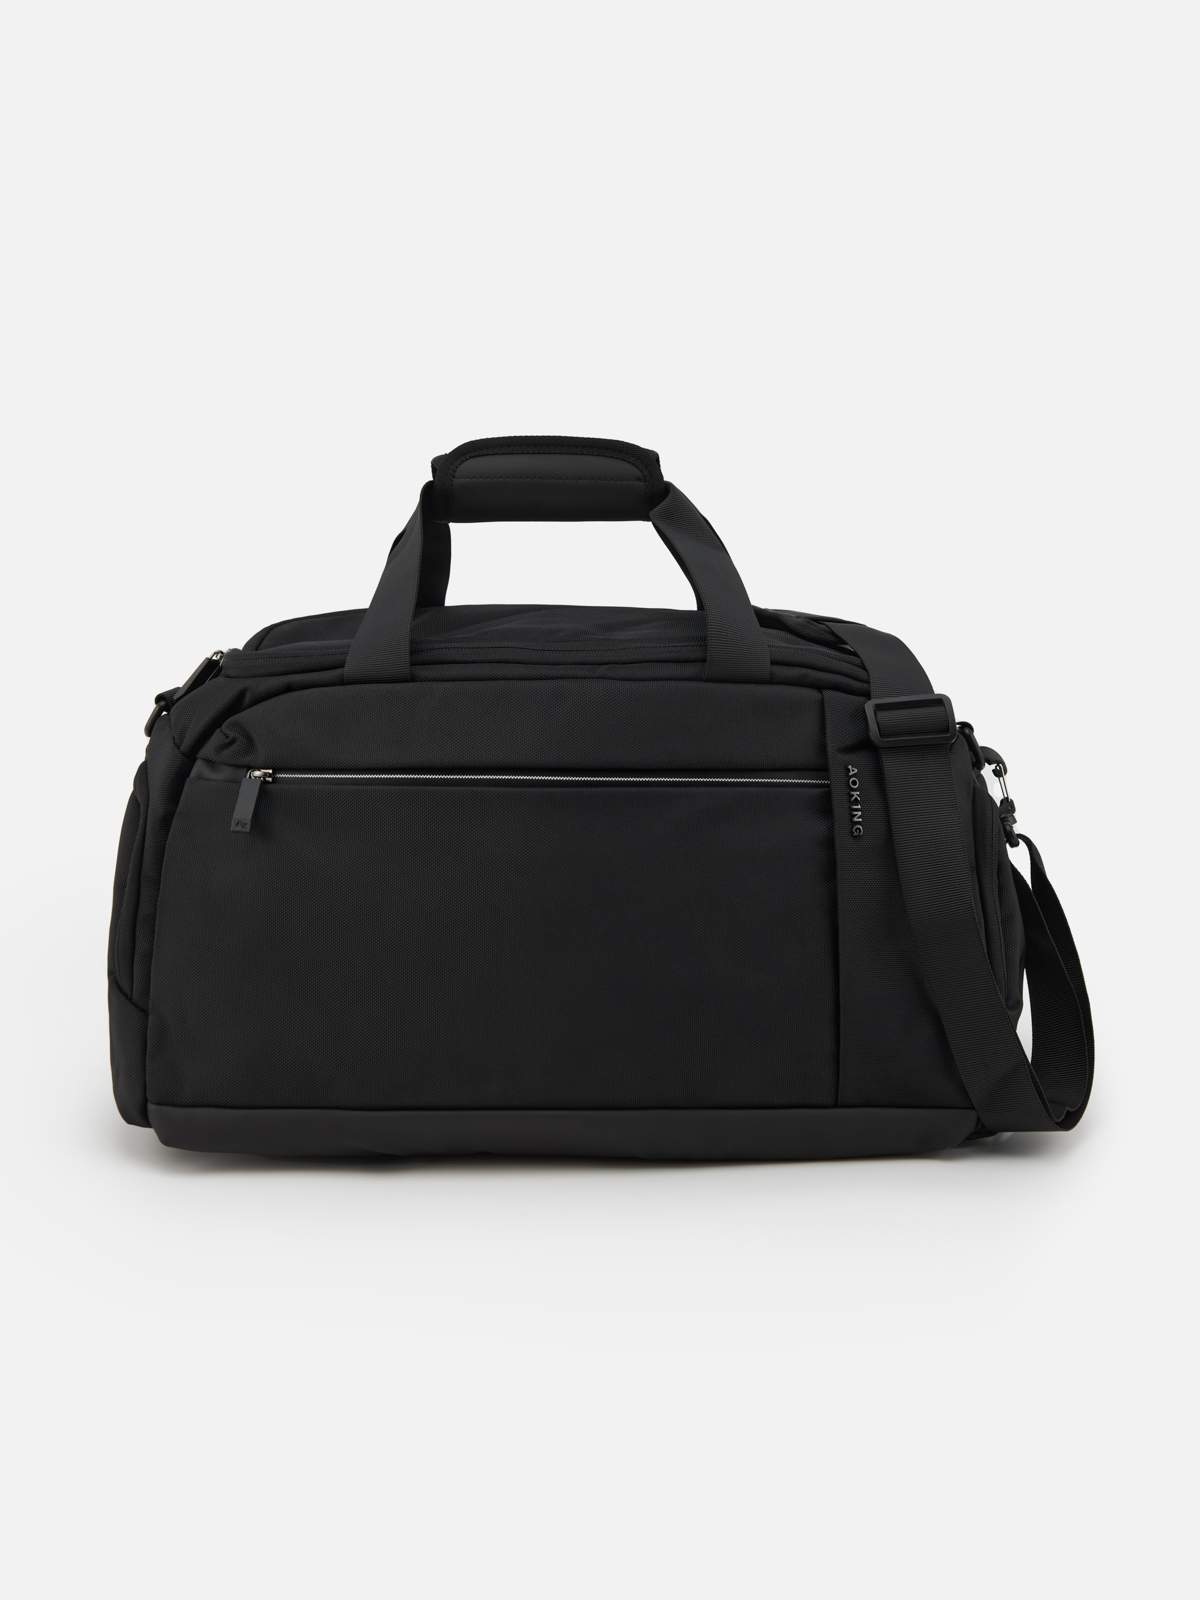 Дорожная сумка мужская Aoking SW1035-Black черная - купить в Мегамаркет Москва Томилино, цена на Мегамаркет